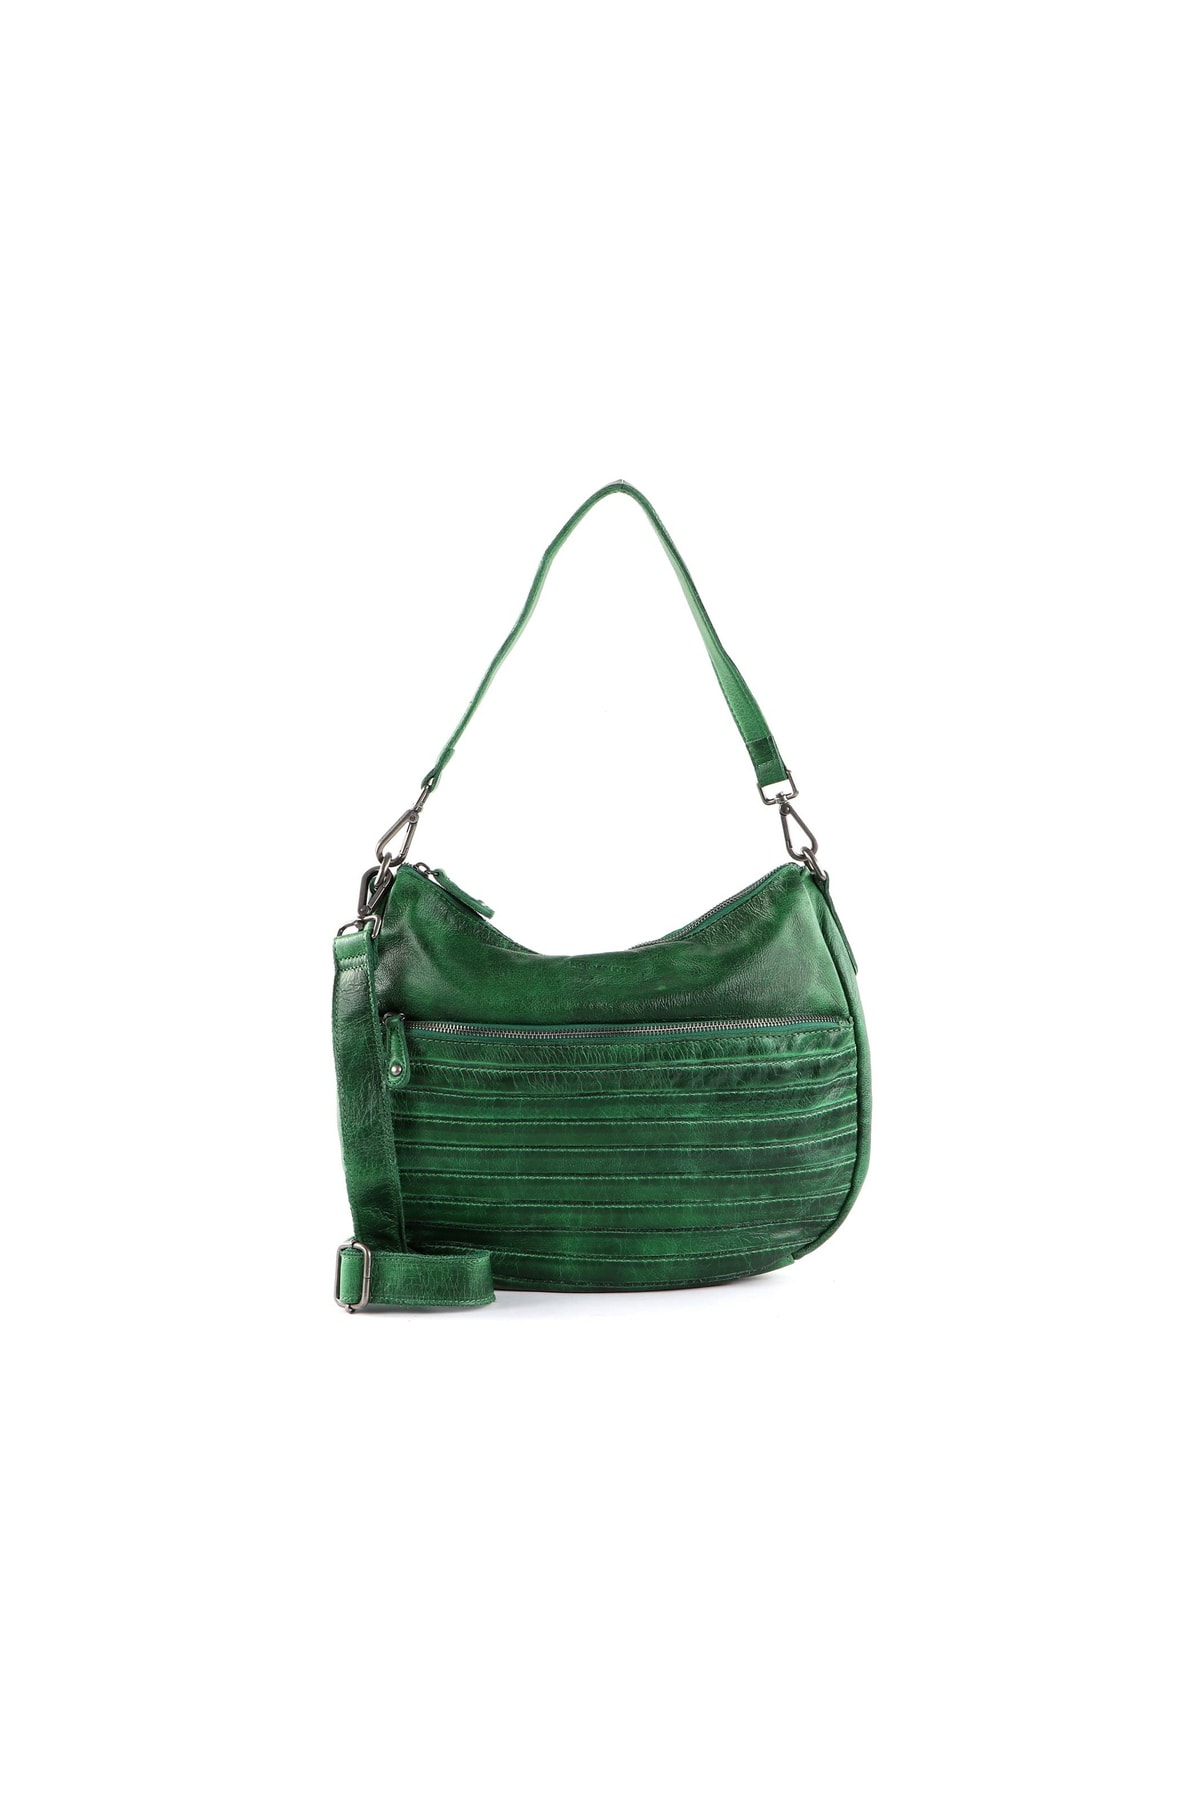 FREDsBRUDER Handtasche Grün Strukturiert Fast ausverkauft